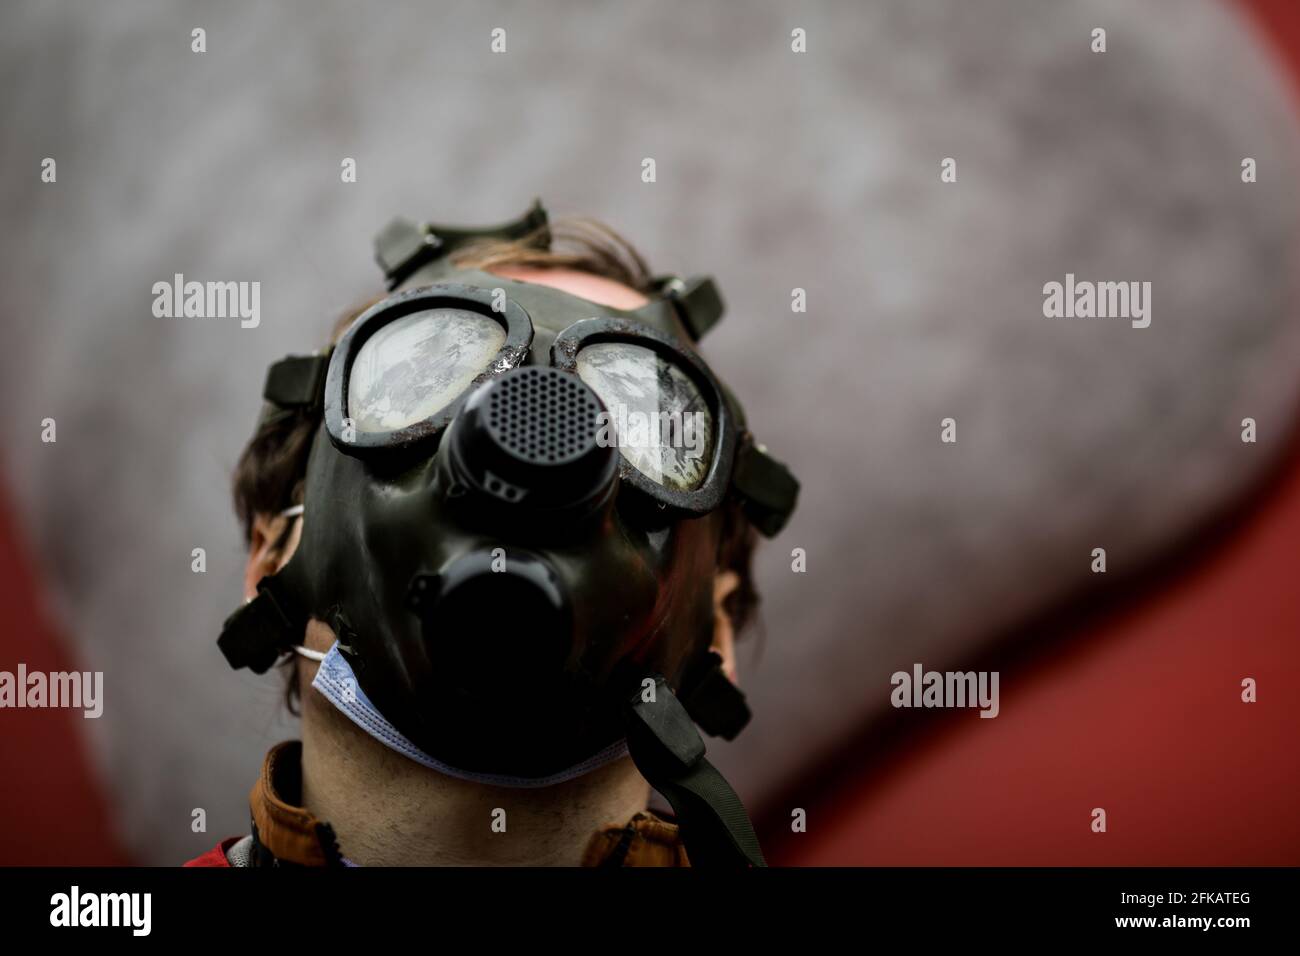 Bild mit geringer Schärfentiefe (selektiver Fokus) mit einer alten und abgenutzten Militärgasmaske ohne Filter auf dem Gesicht eines Mannes. Stockfoto